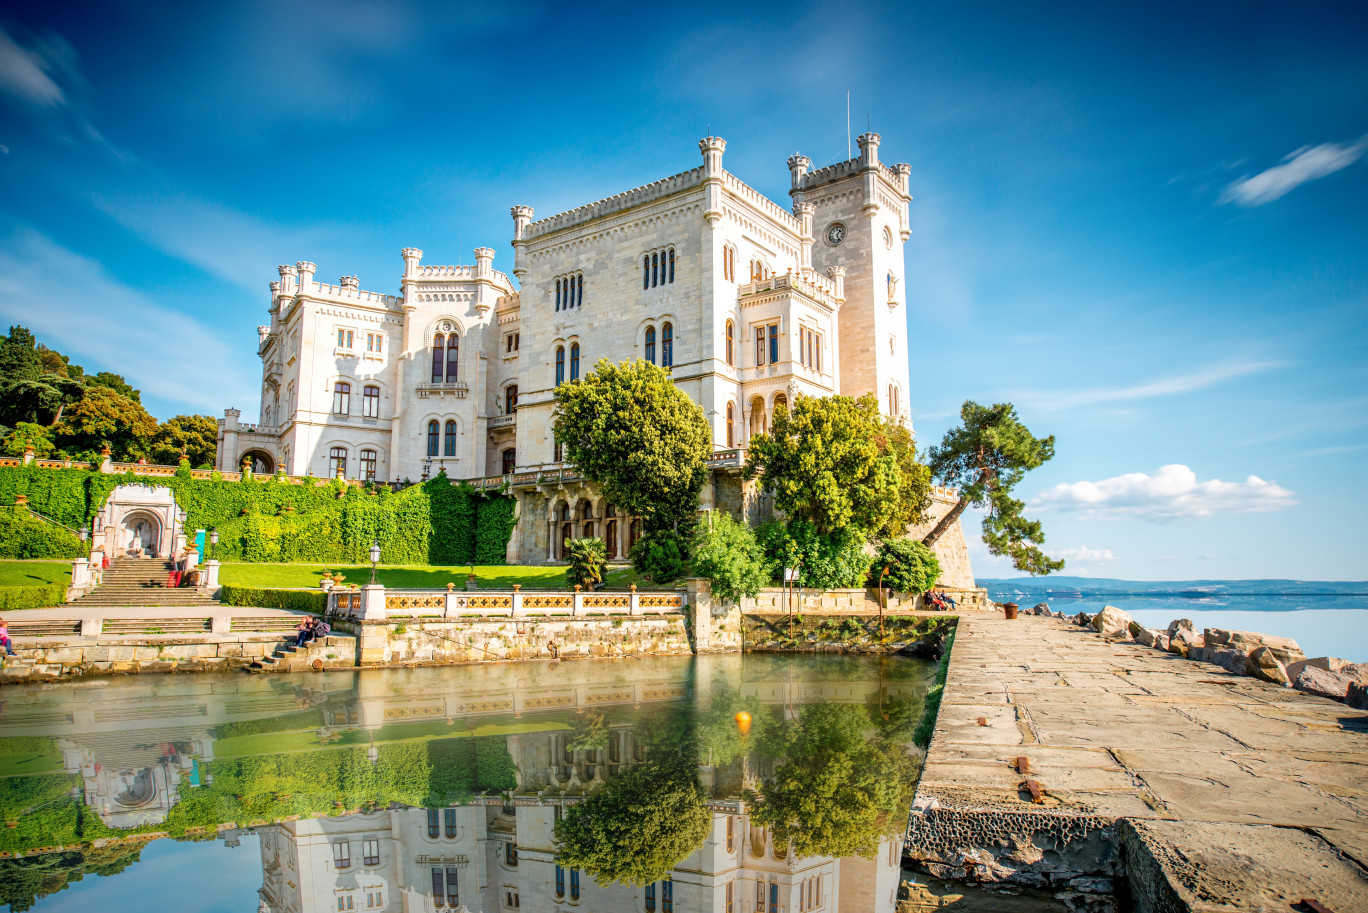 Le château de Miramare à Trieste. (c)rh2010 